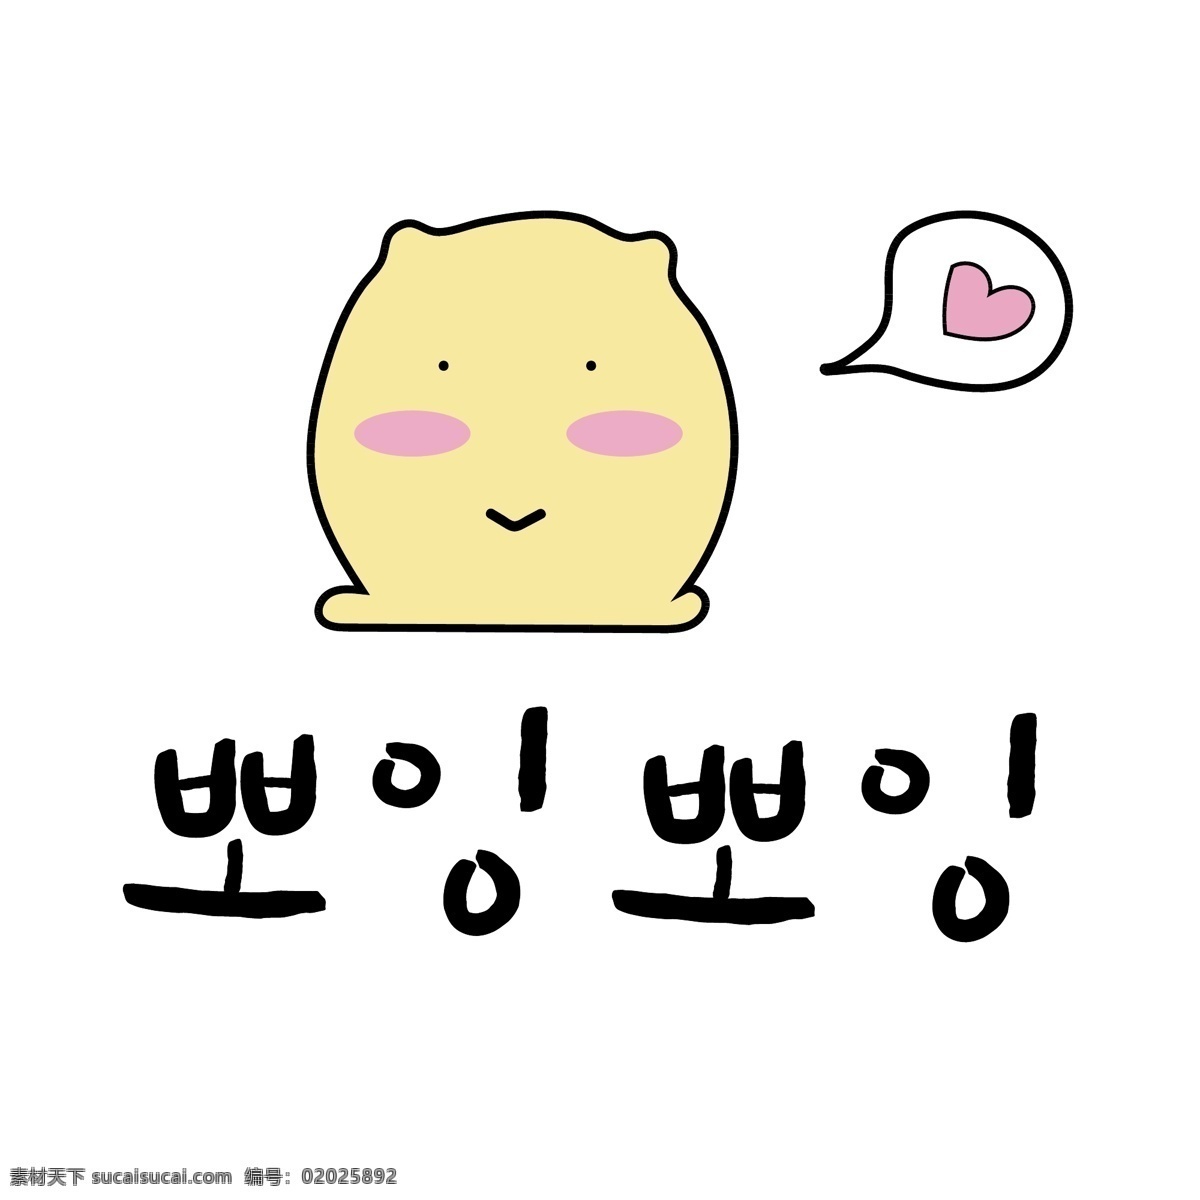 韩国 常用语 boring 撒娇 用语 肝药 名黄色 对话 漫画 小的 向量 撒娇用语 日常用语 卡通